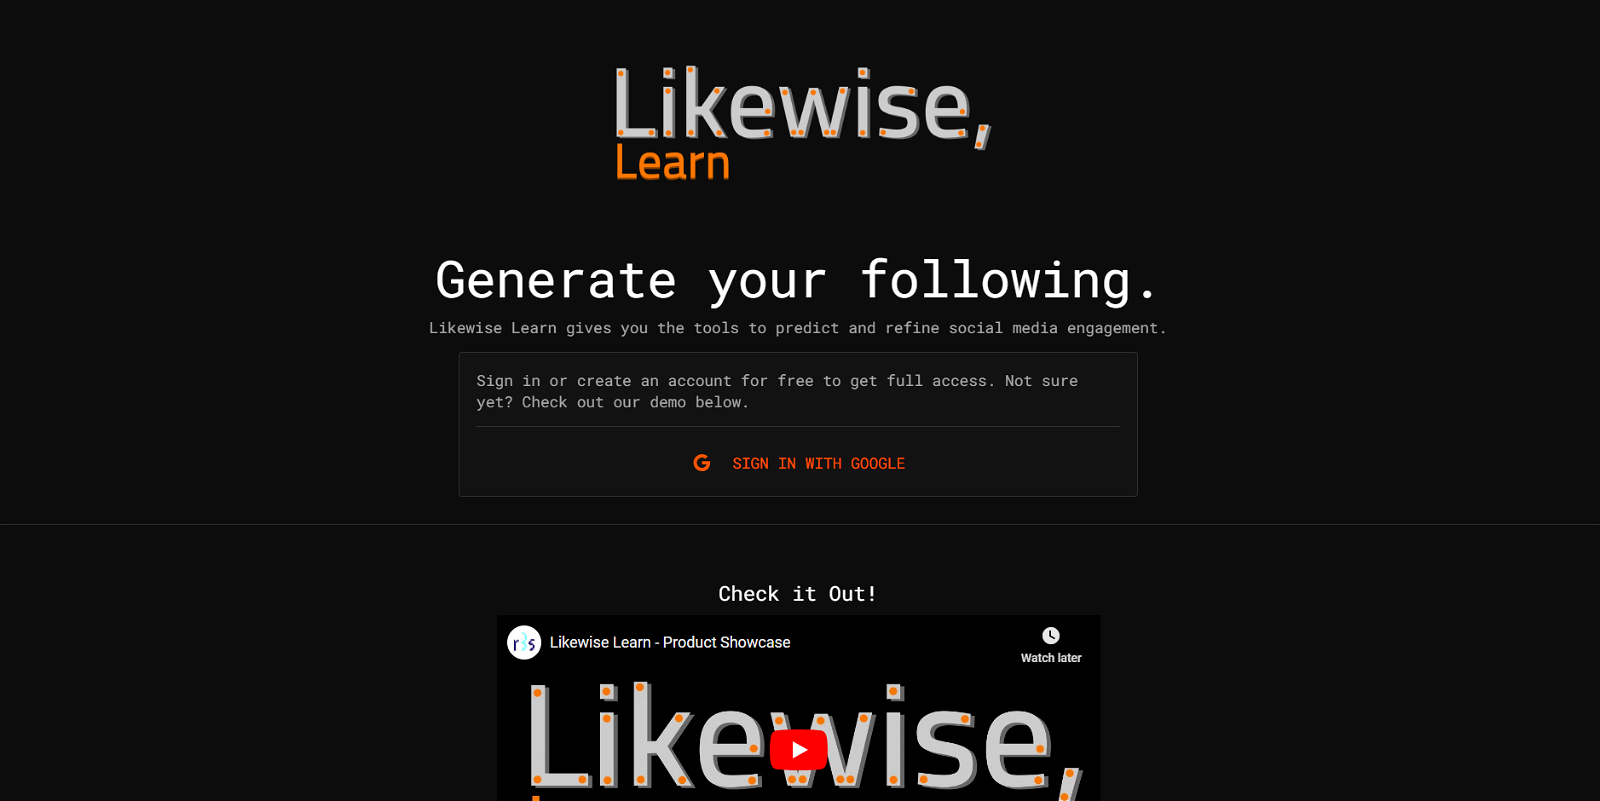 Likewise Learn website